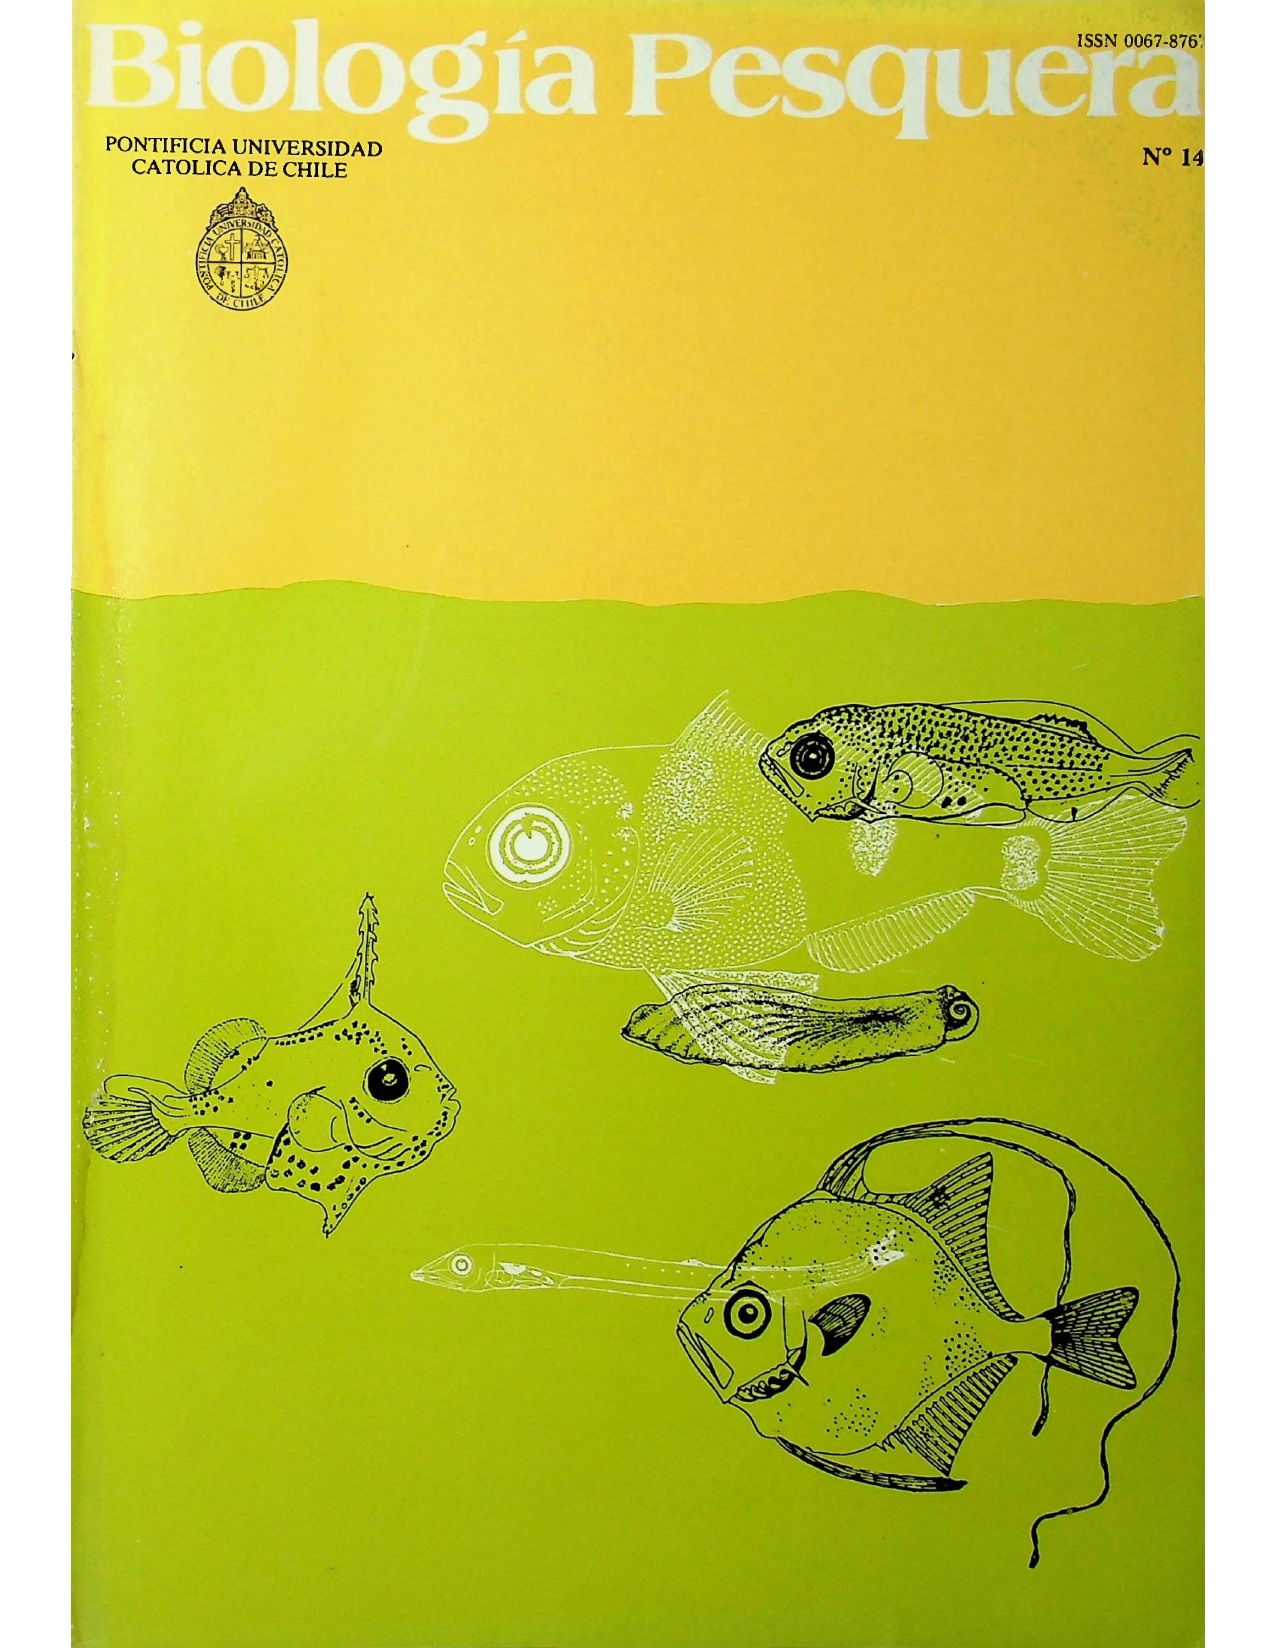 					View No. 14 (1985): Biología Pesquera
				